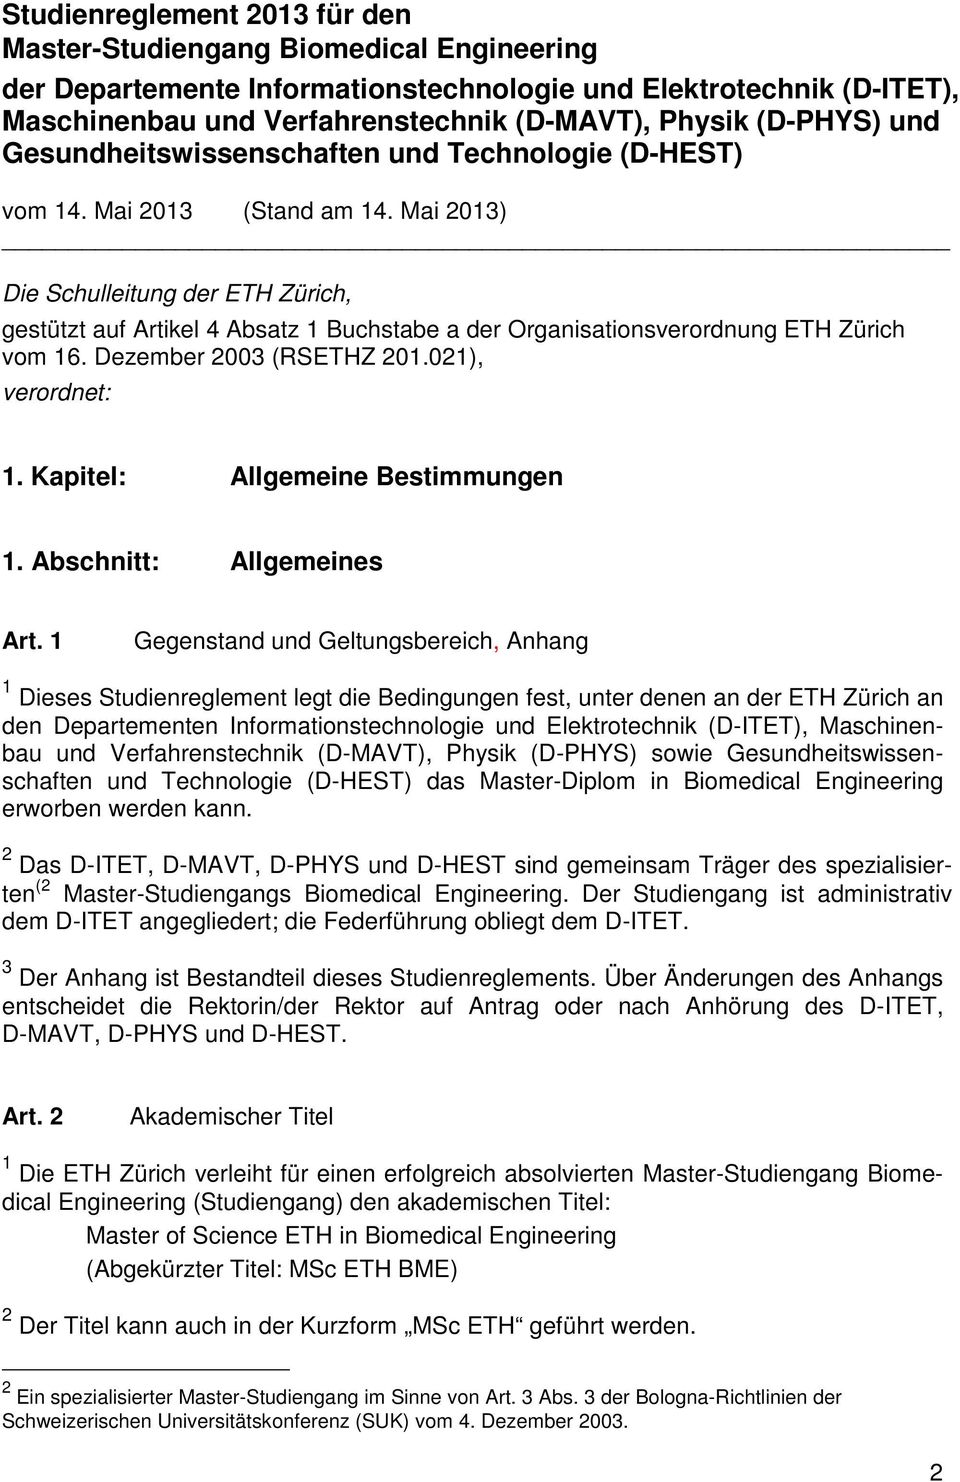 Mai 2013) Die Schulleitung der ETH Zürich, gestützt auf Artikel 4 Absatz 1 Buchstabe a der Organisationsverordnung ETH Zürich vom 16. Dezember 2003 (RSETHZ 201.021), verordnet: 1.